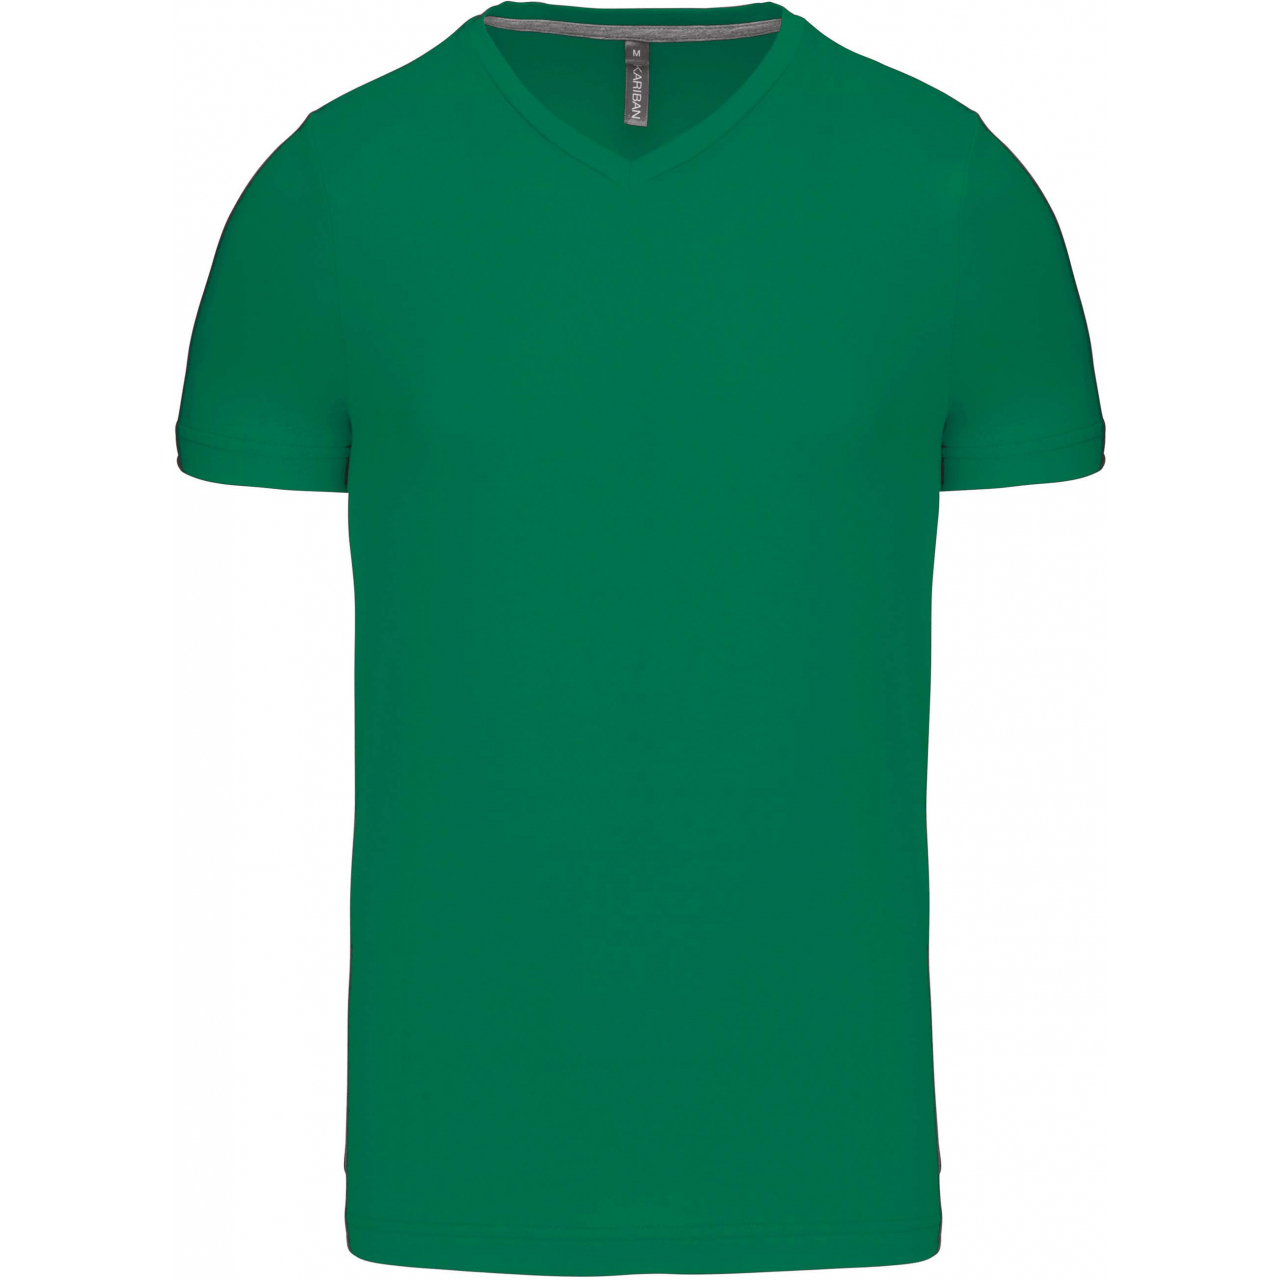 Pánské tričko Kariban krátký rukáv V-neck - zelené, M